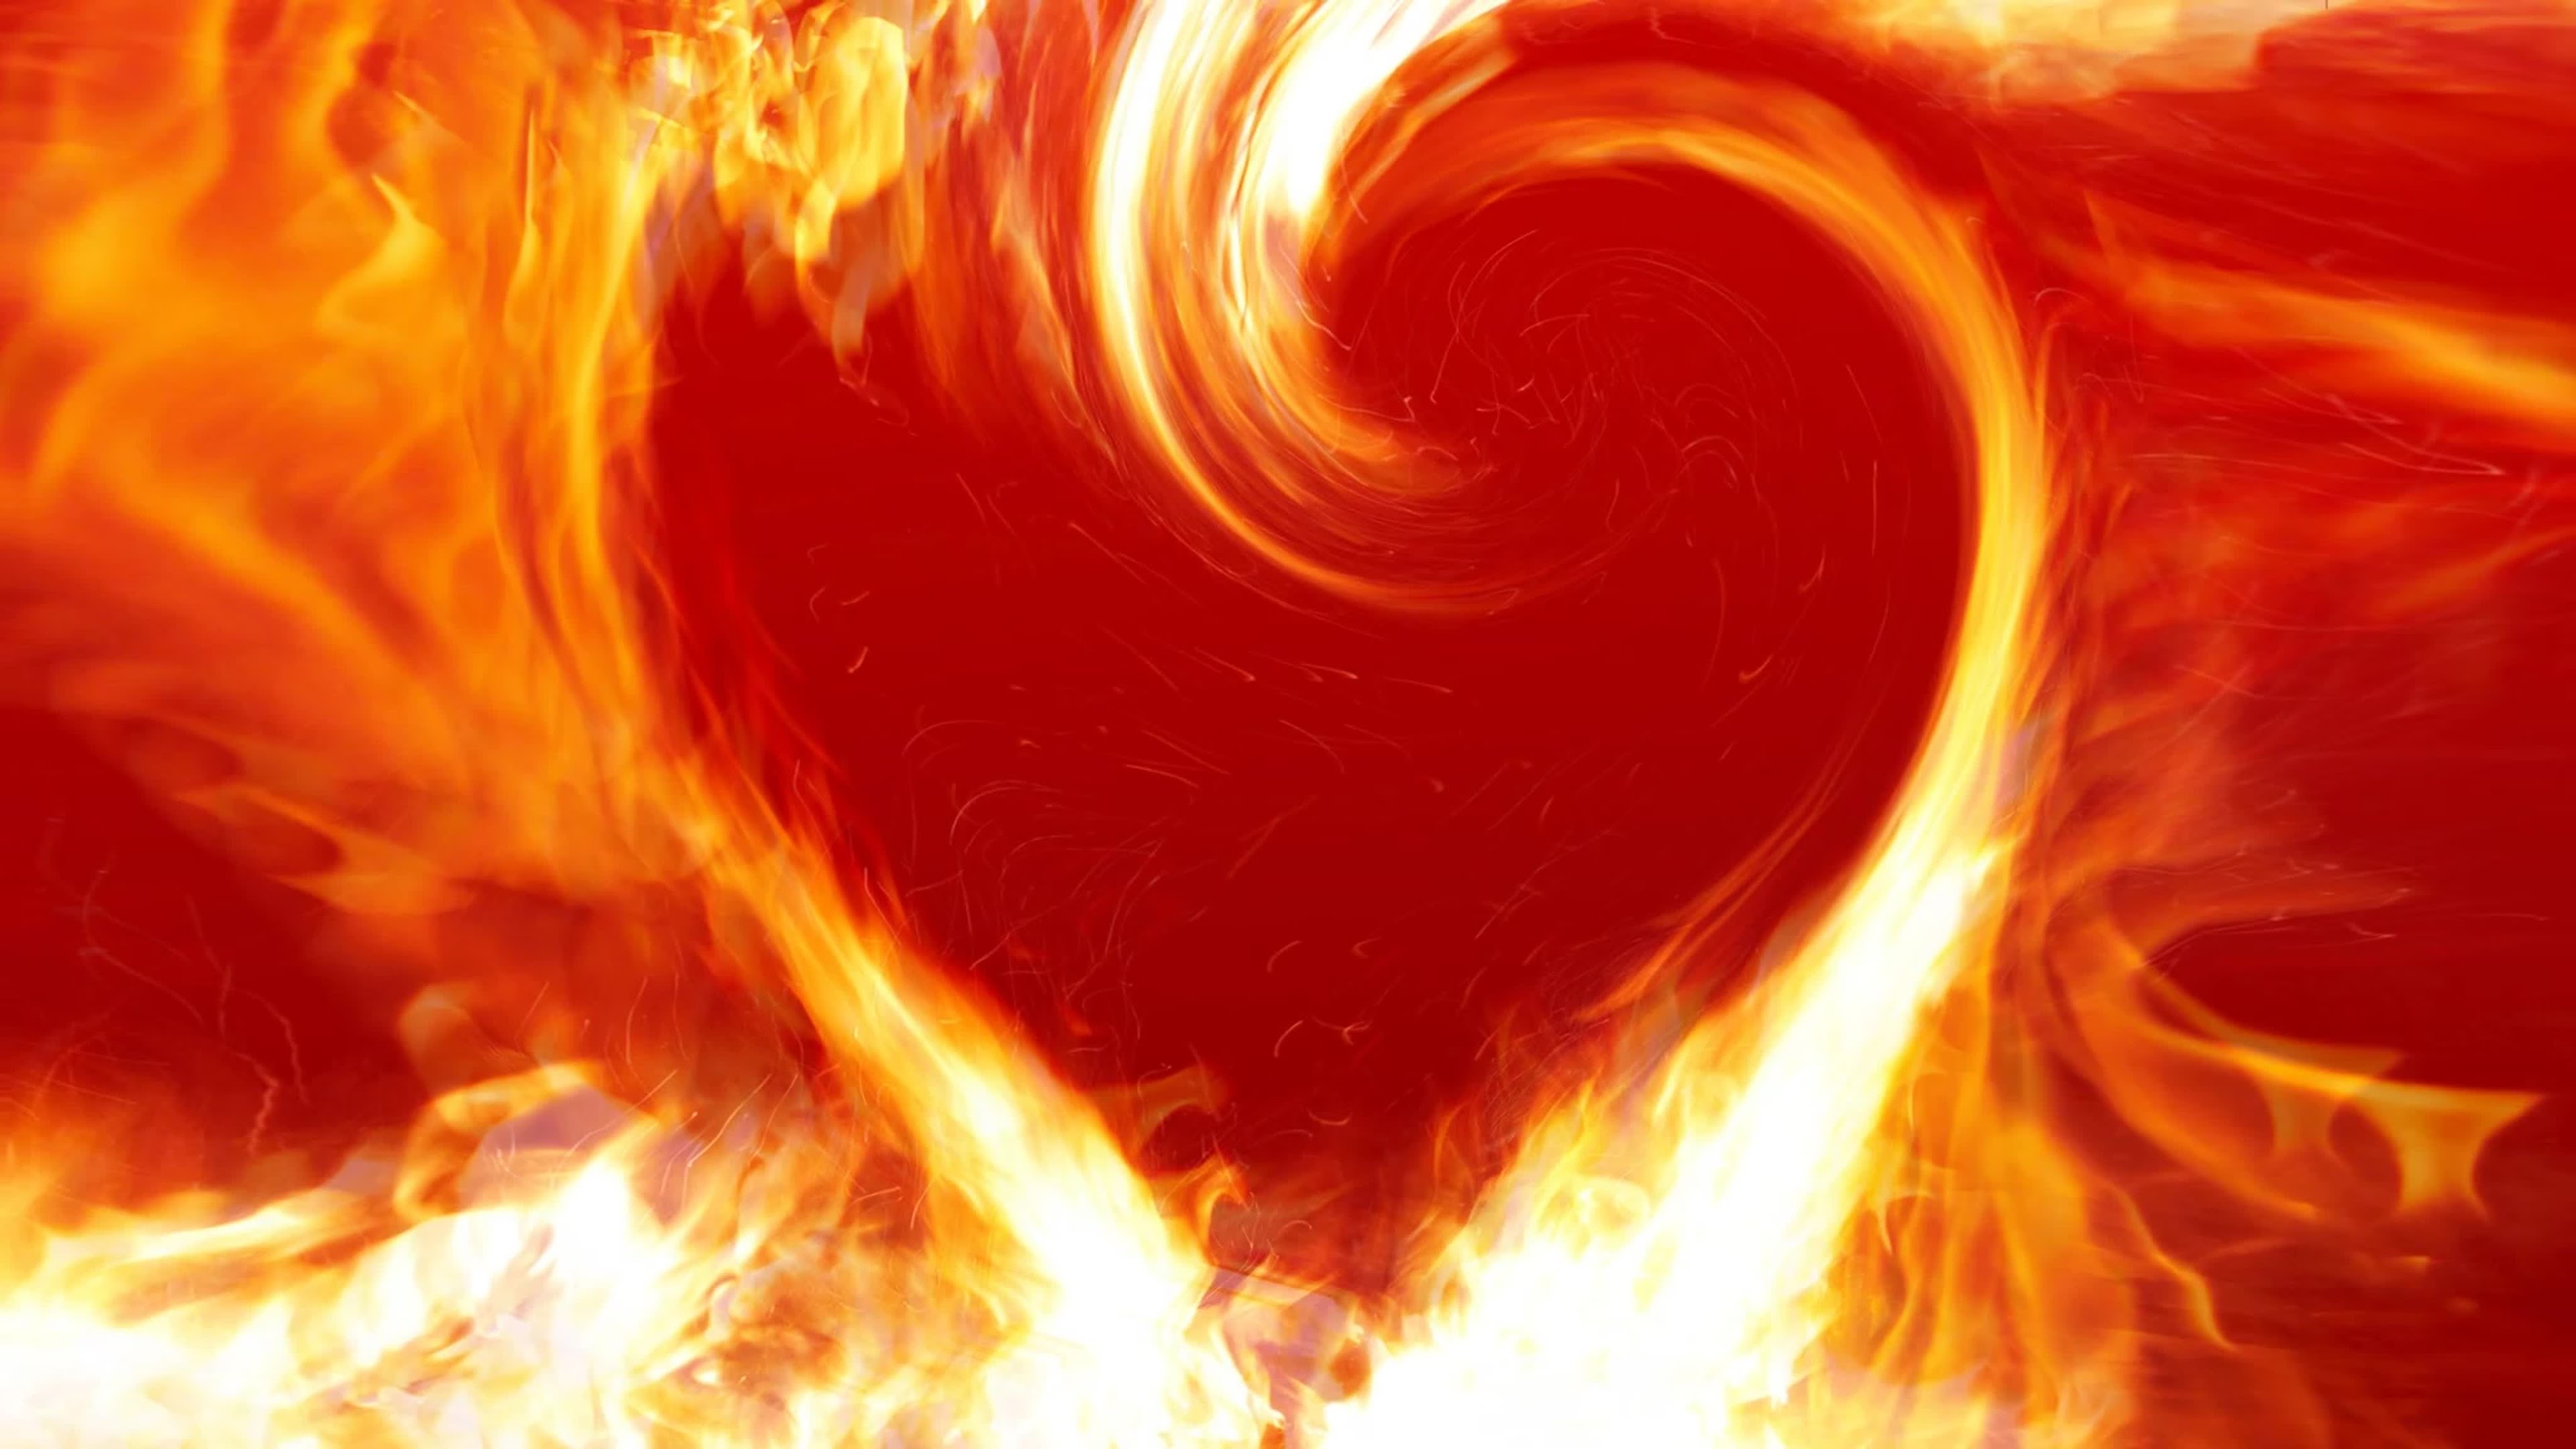 Сердце чаще мотору автор слились сладчайшему. Сердце в огне. Красивый огонь. Огненное сердце.